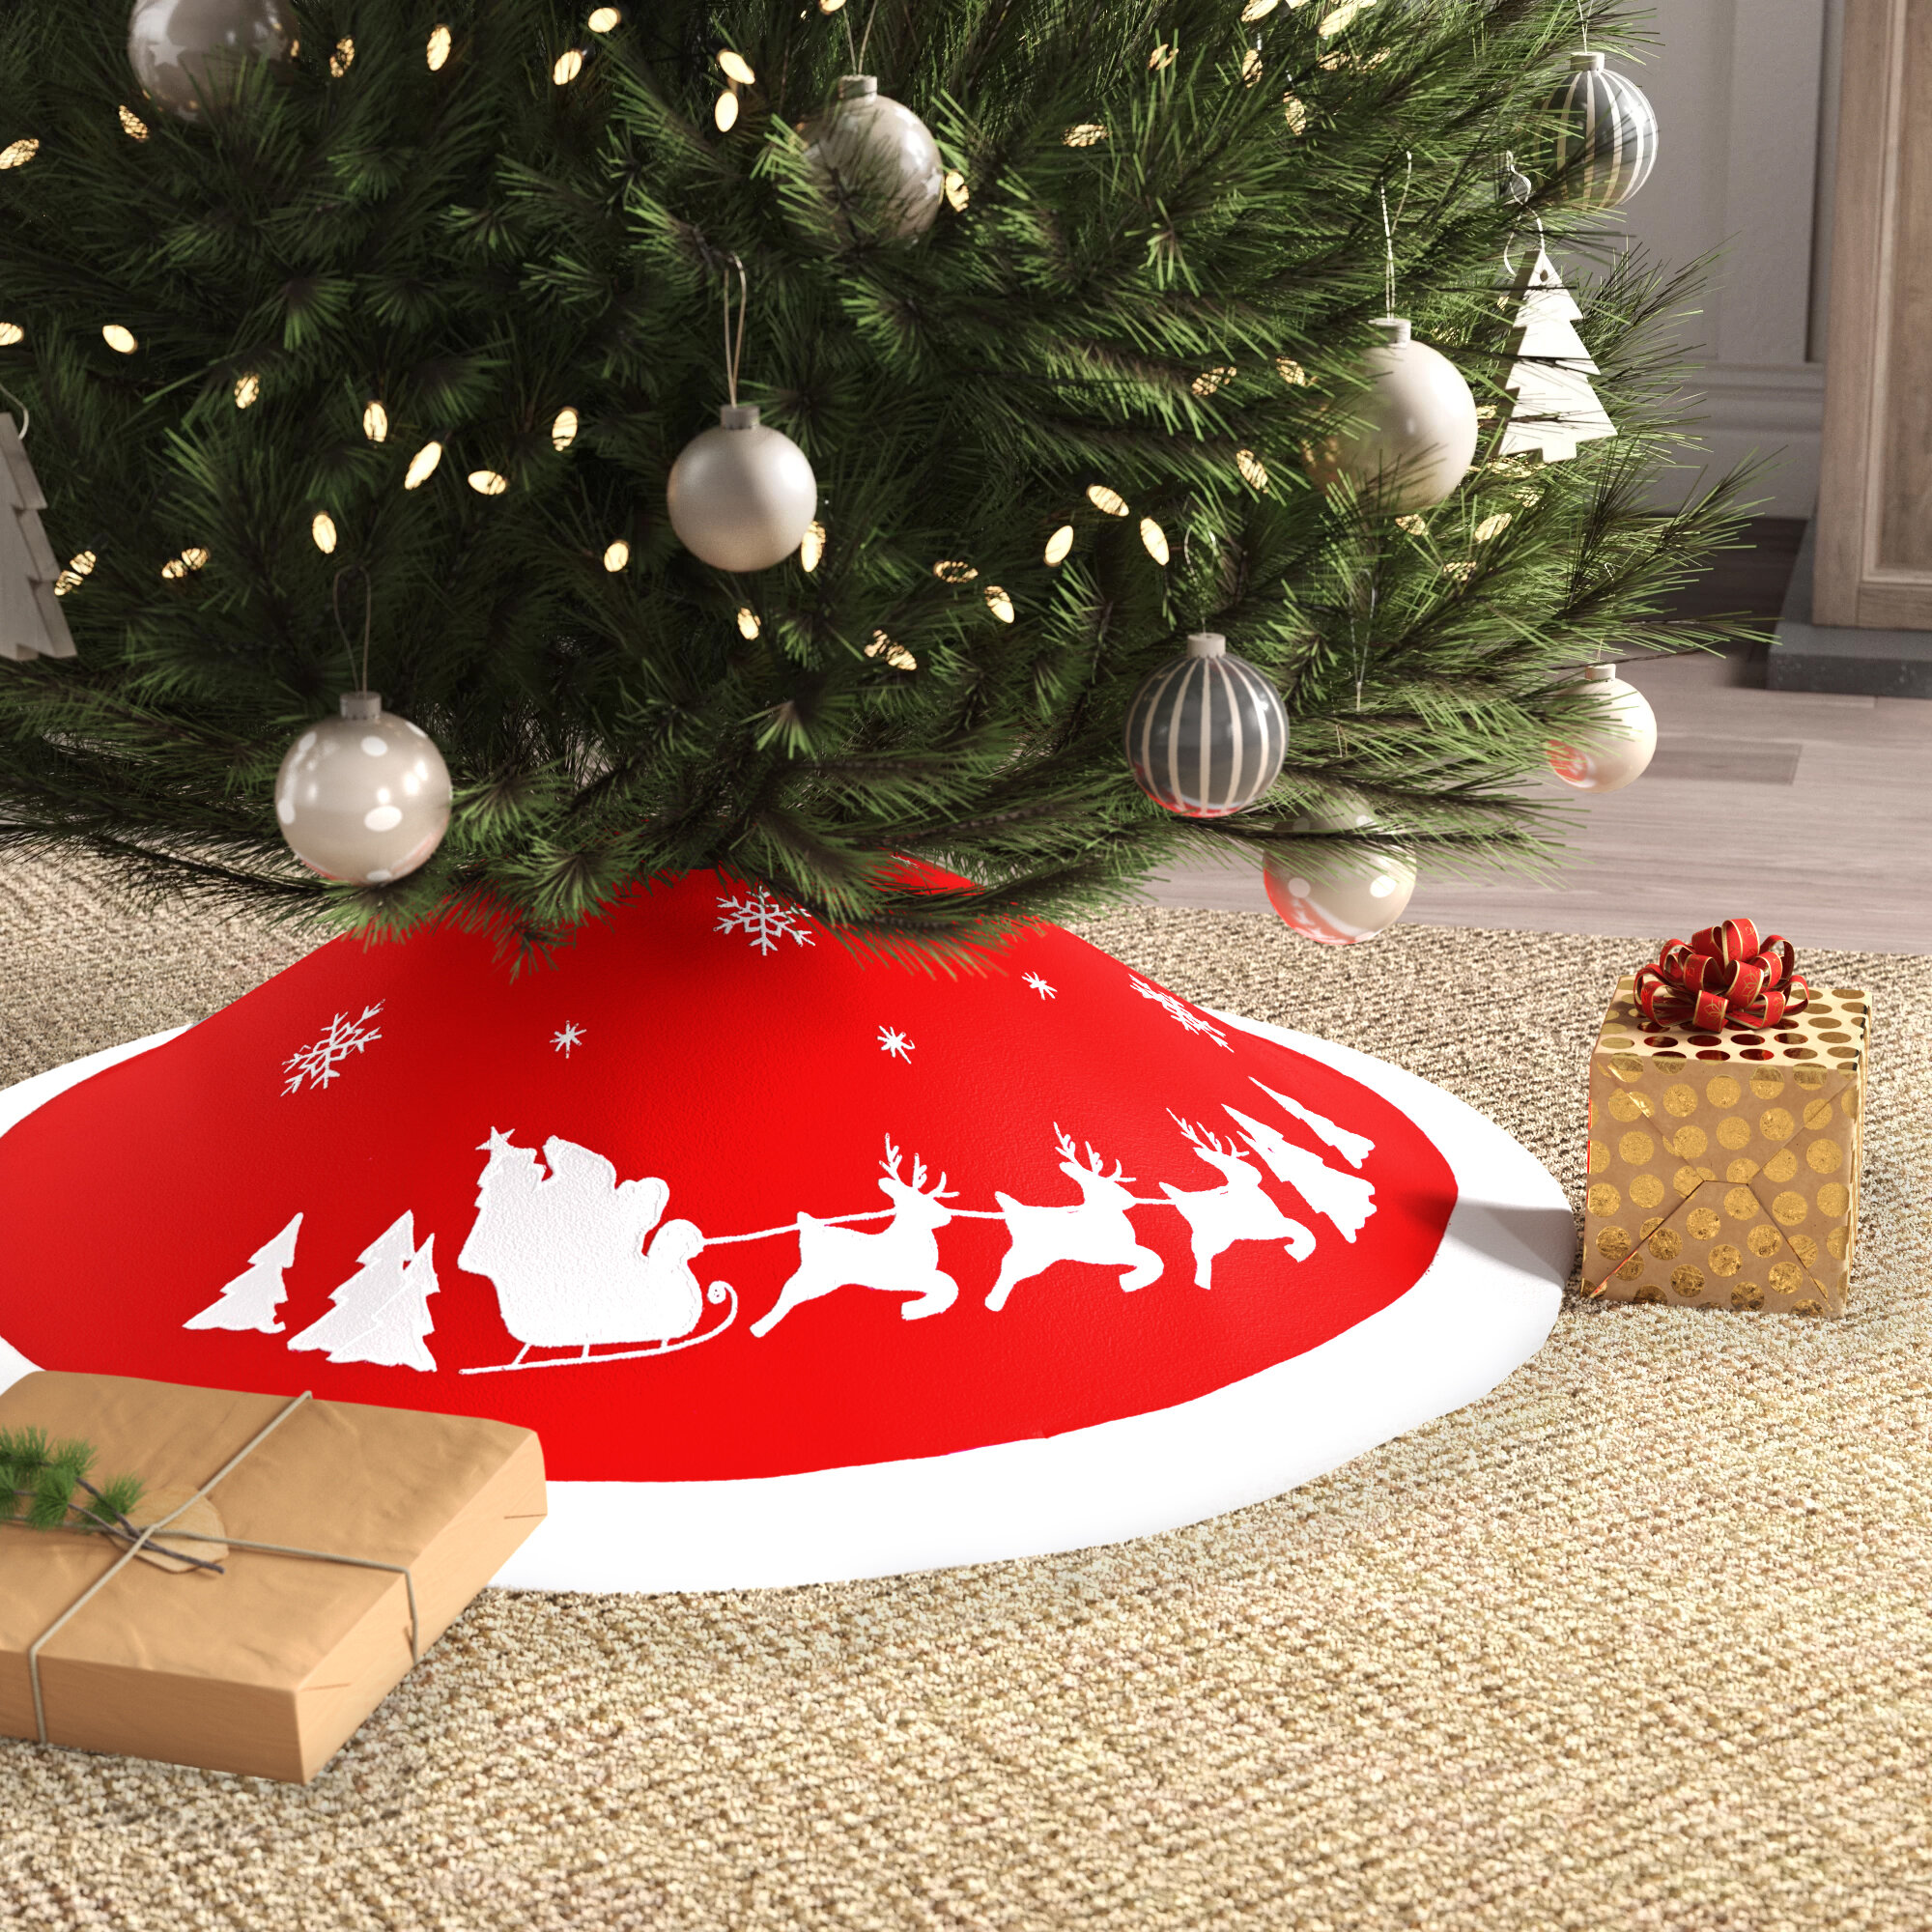 Christmas Tree Skirt/Christmas Tree Skirt Decorations 35 inch